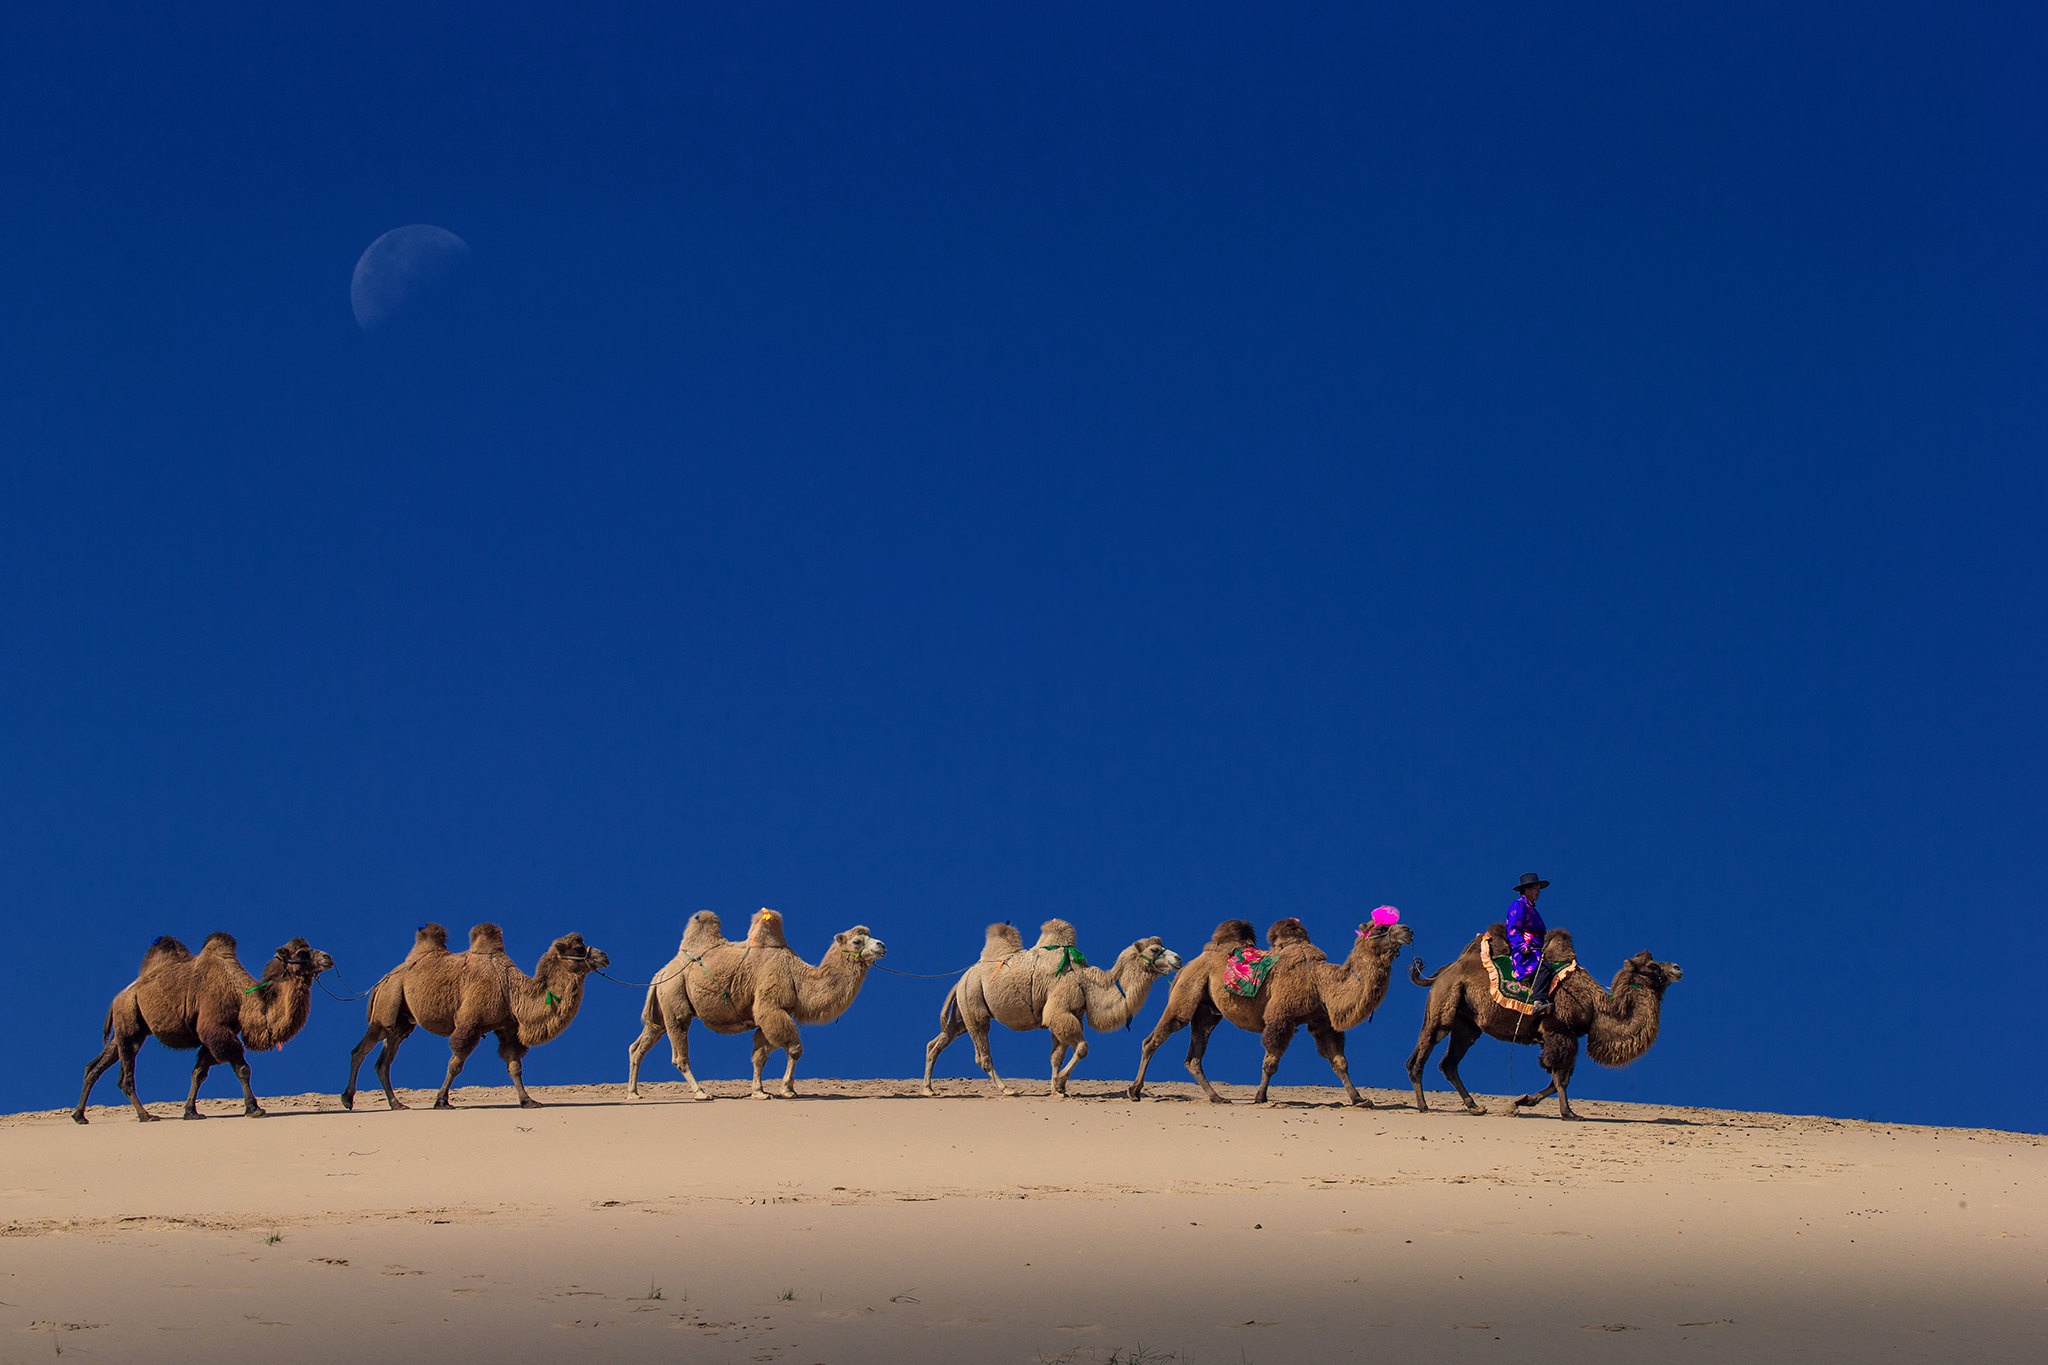 Descarga gratuita de fondo de pantalla para móvil de Fotografía, Camello, Caravana.